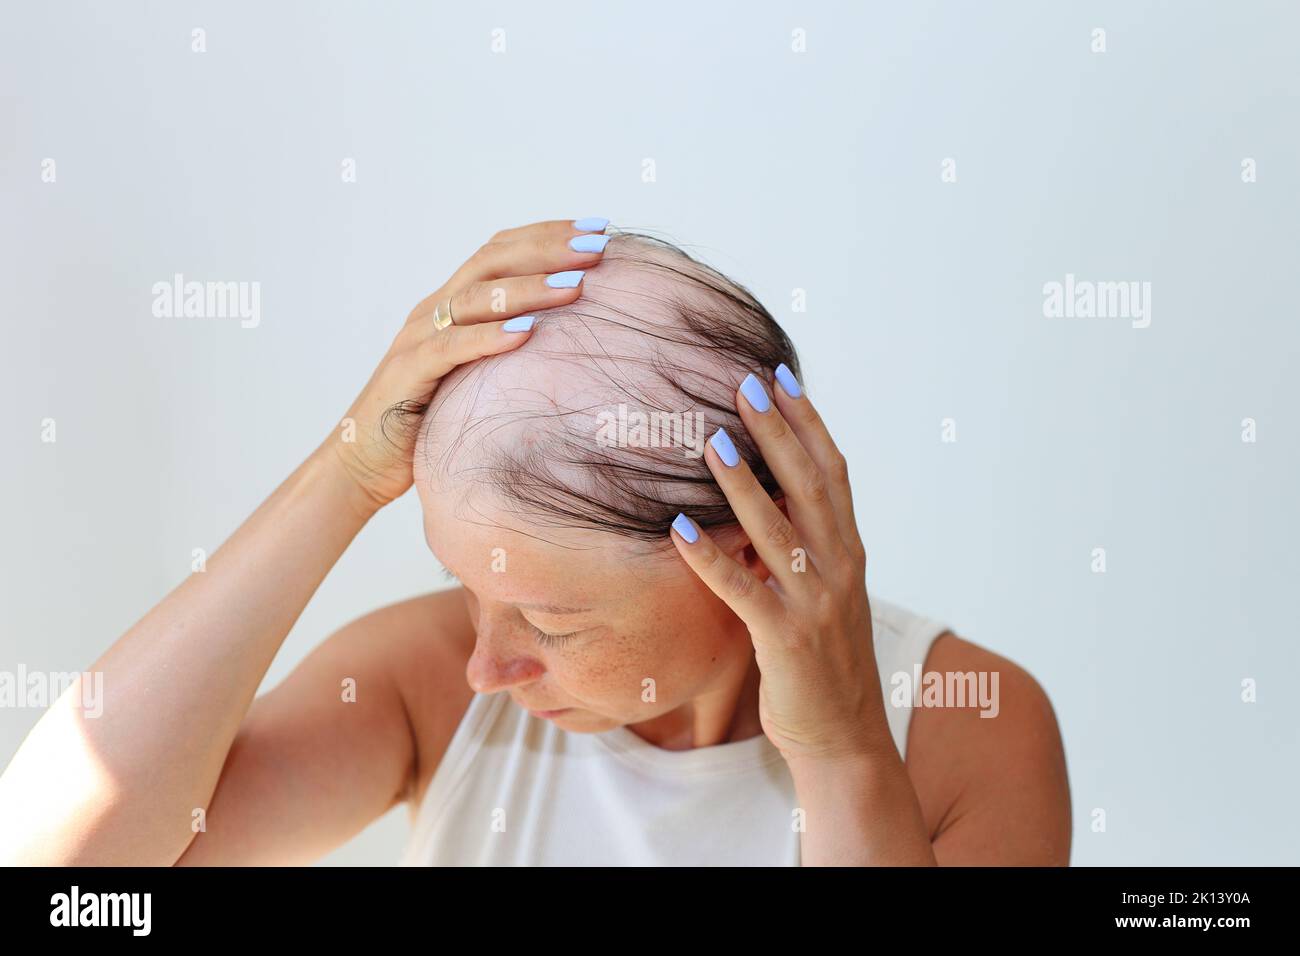 Haarausfall in Form von Alopecia areata. Kahlköpfiger Kopf einer Frau. Haarausfall nach Covid. Kahle Stellen mit totaler Alopezie Stockfoto